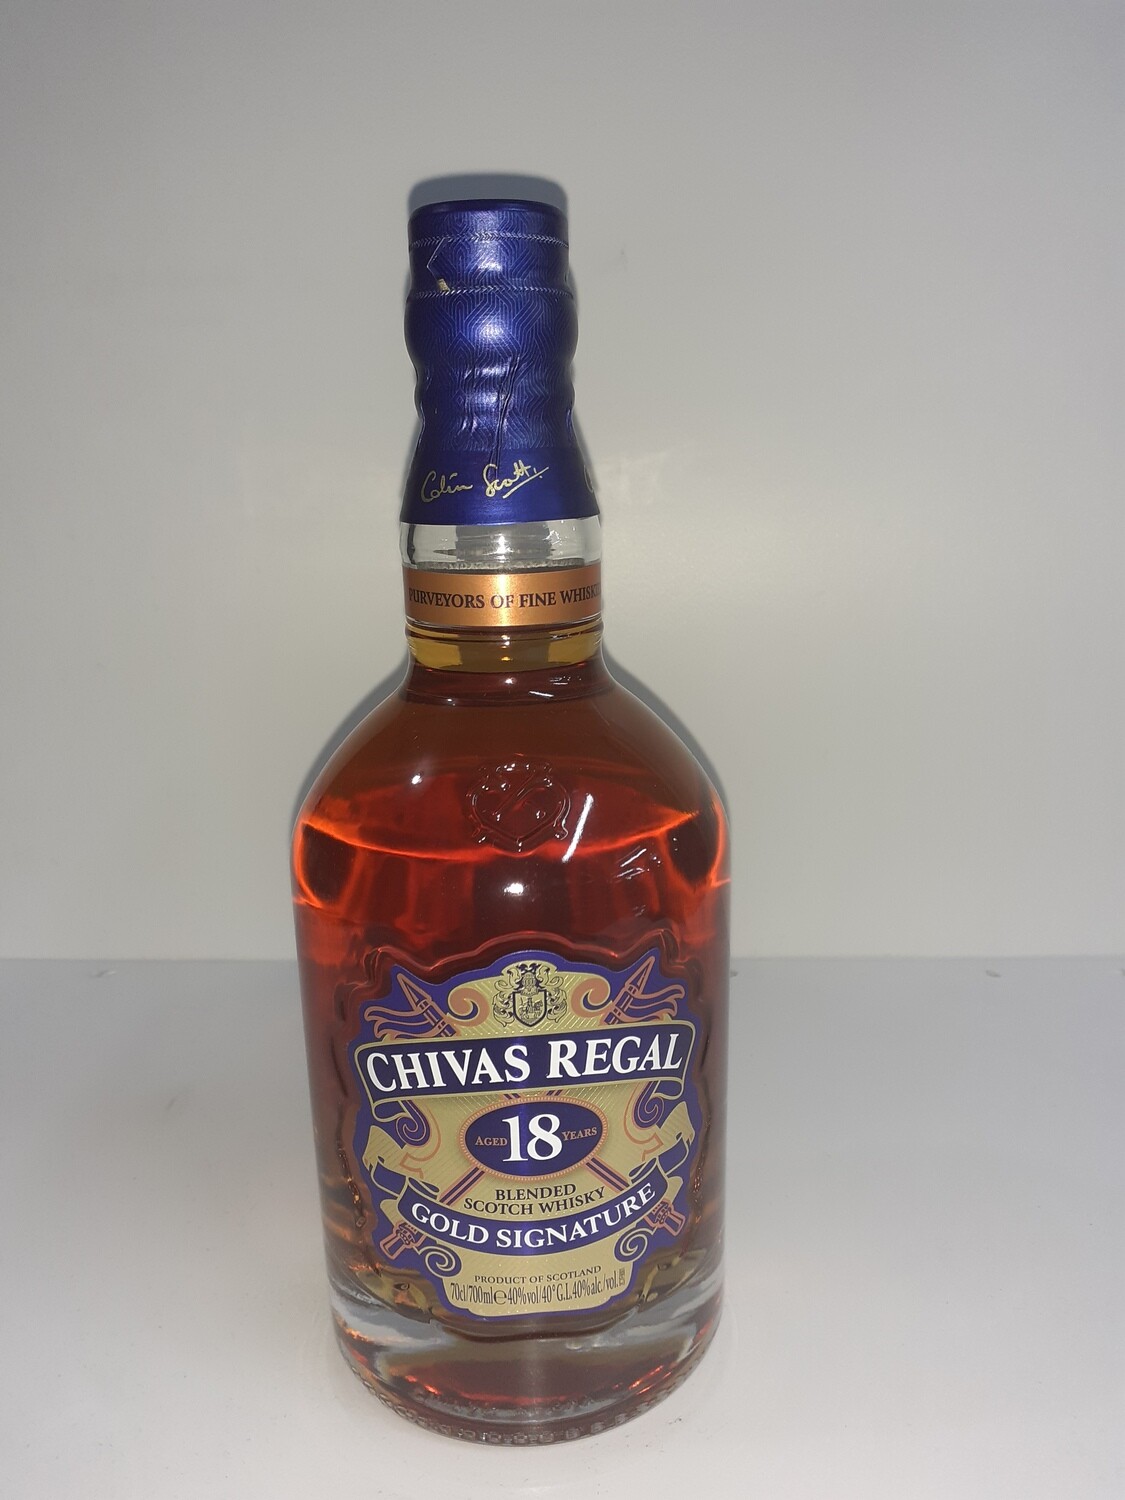 CHIVAS REGAL